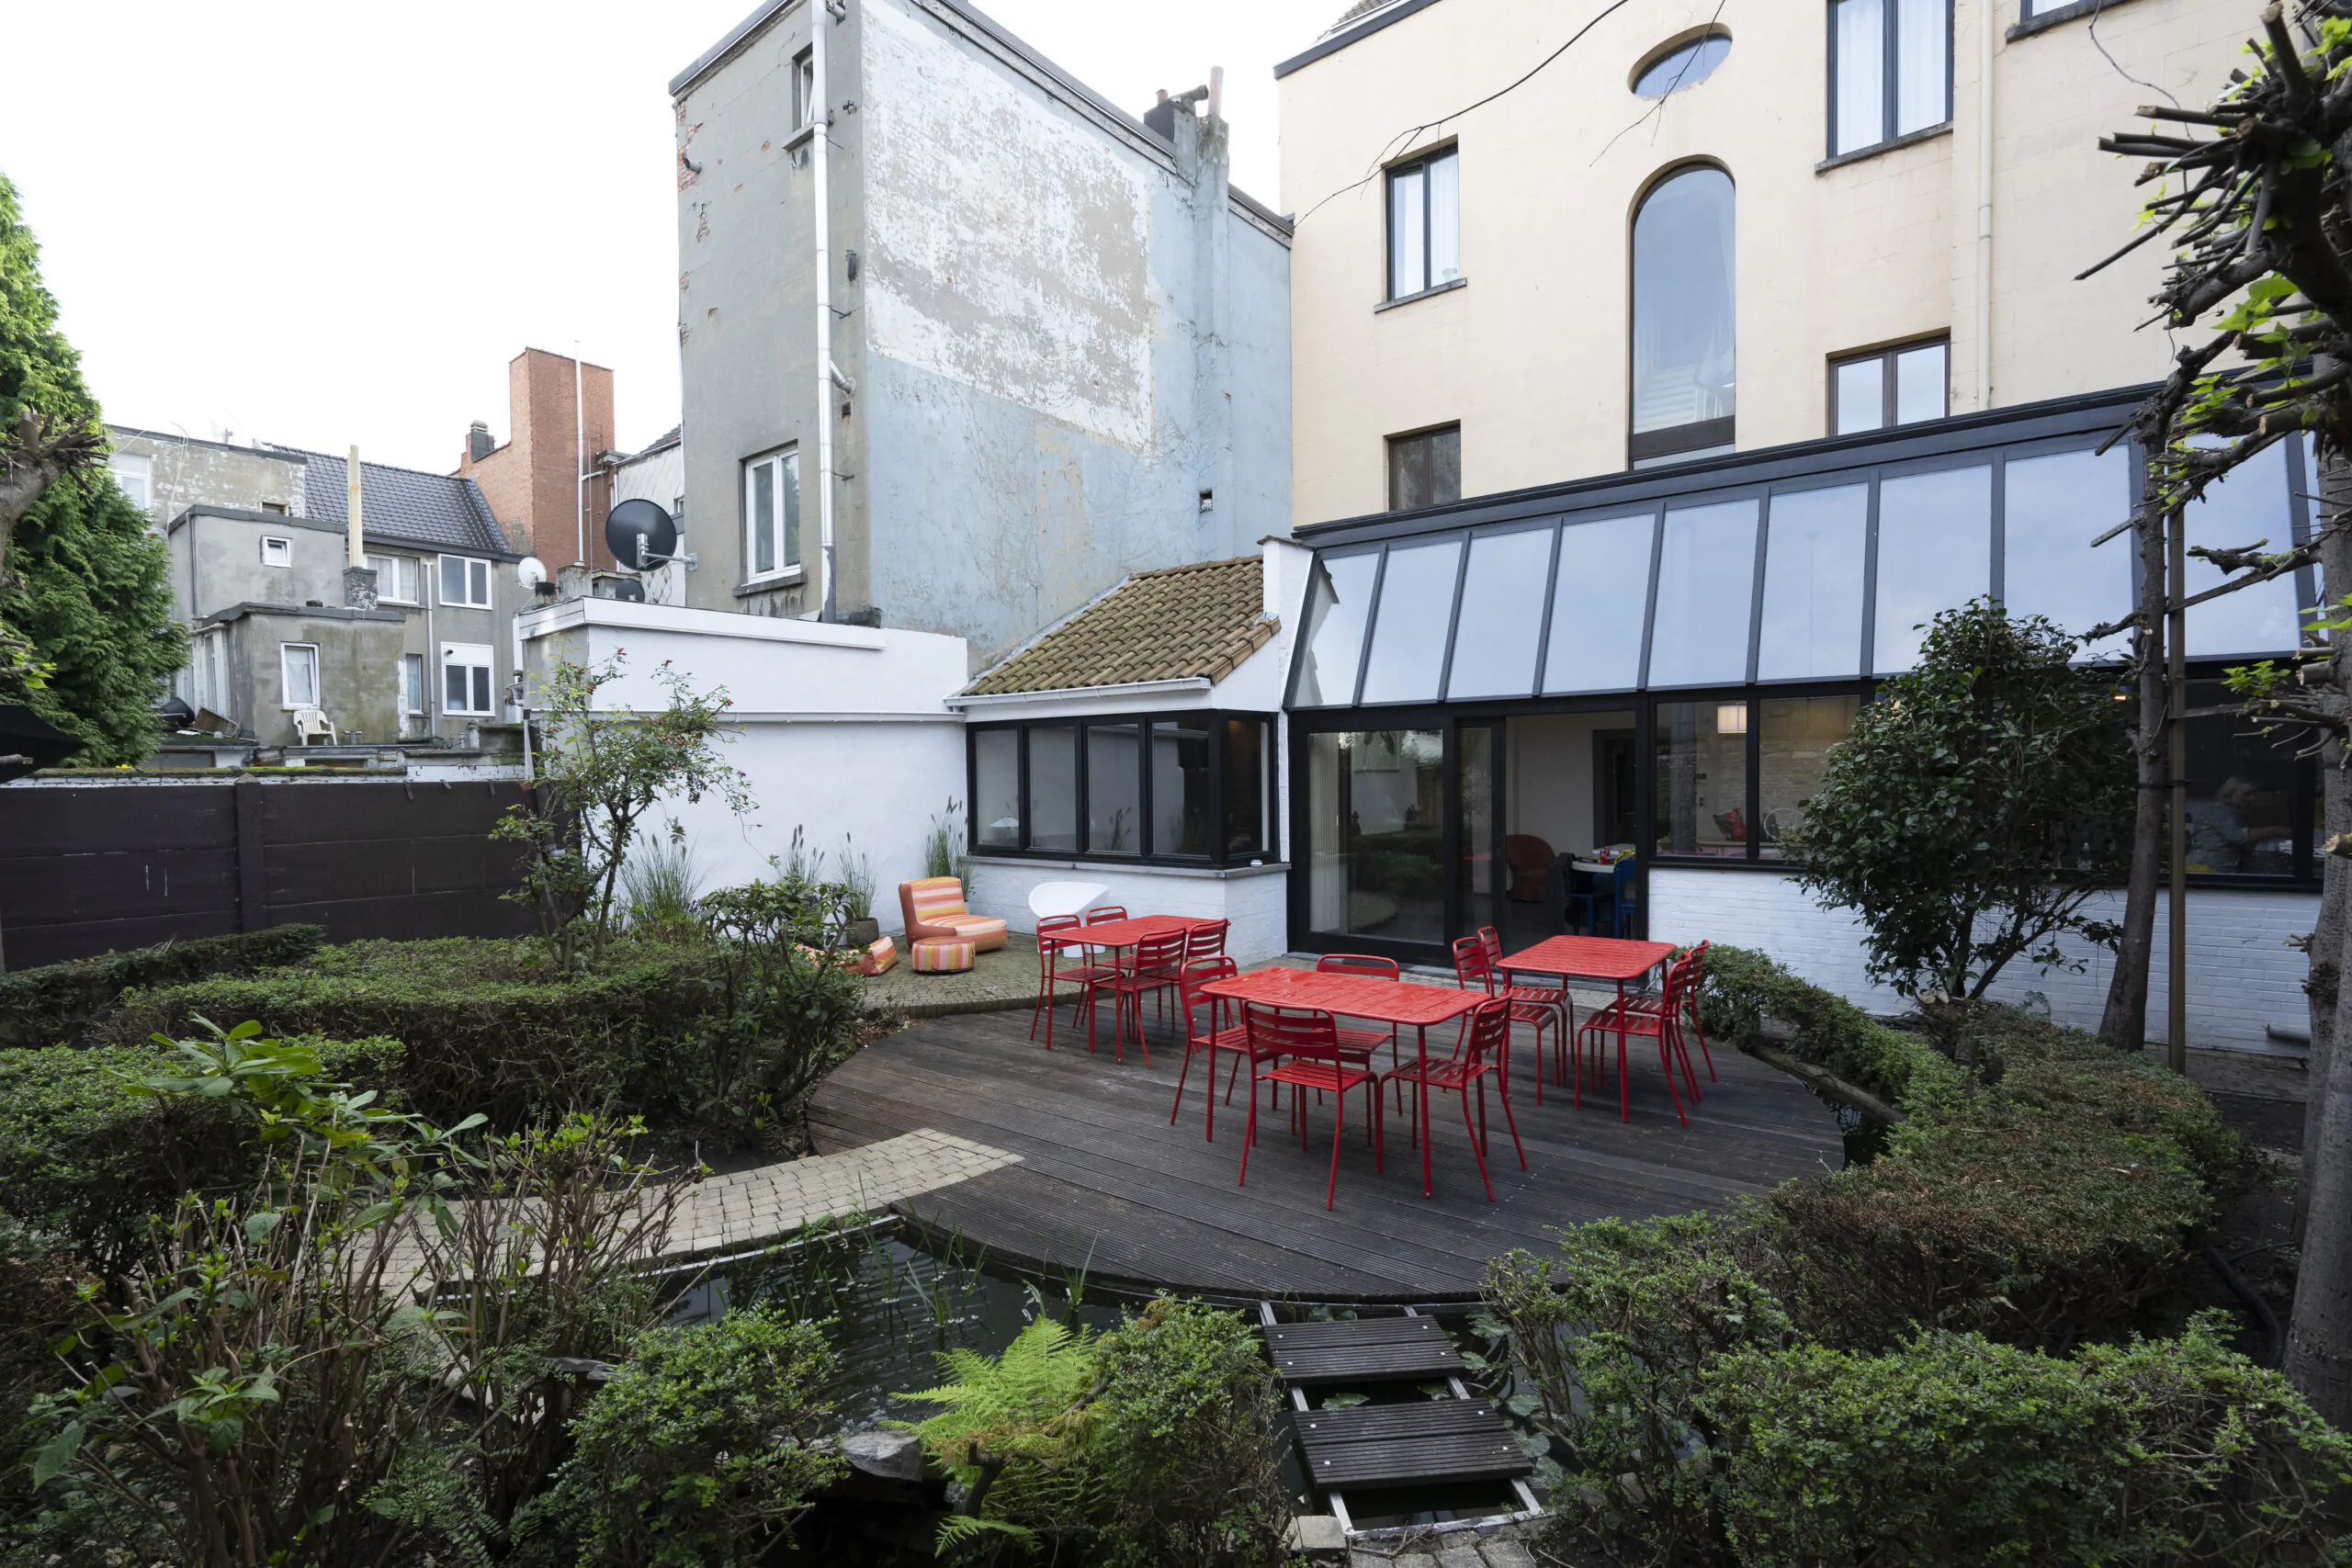 The Garden House | Co-living rooms | Rent room in Antwerp